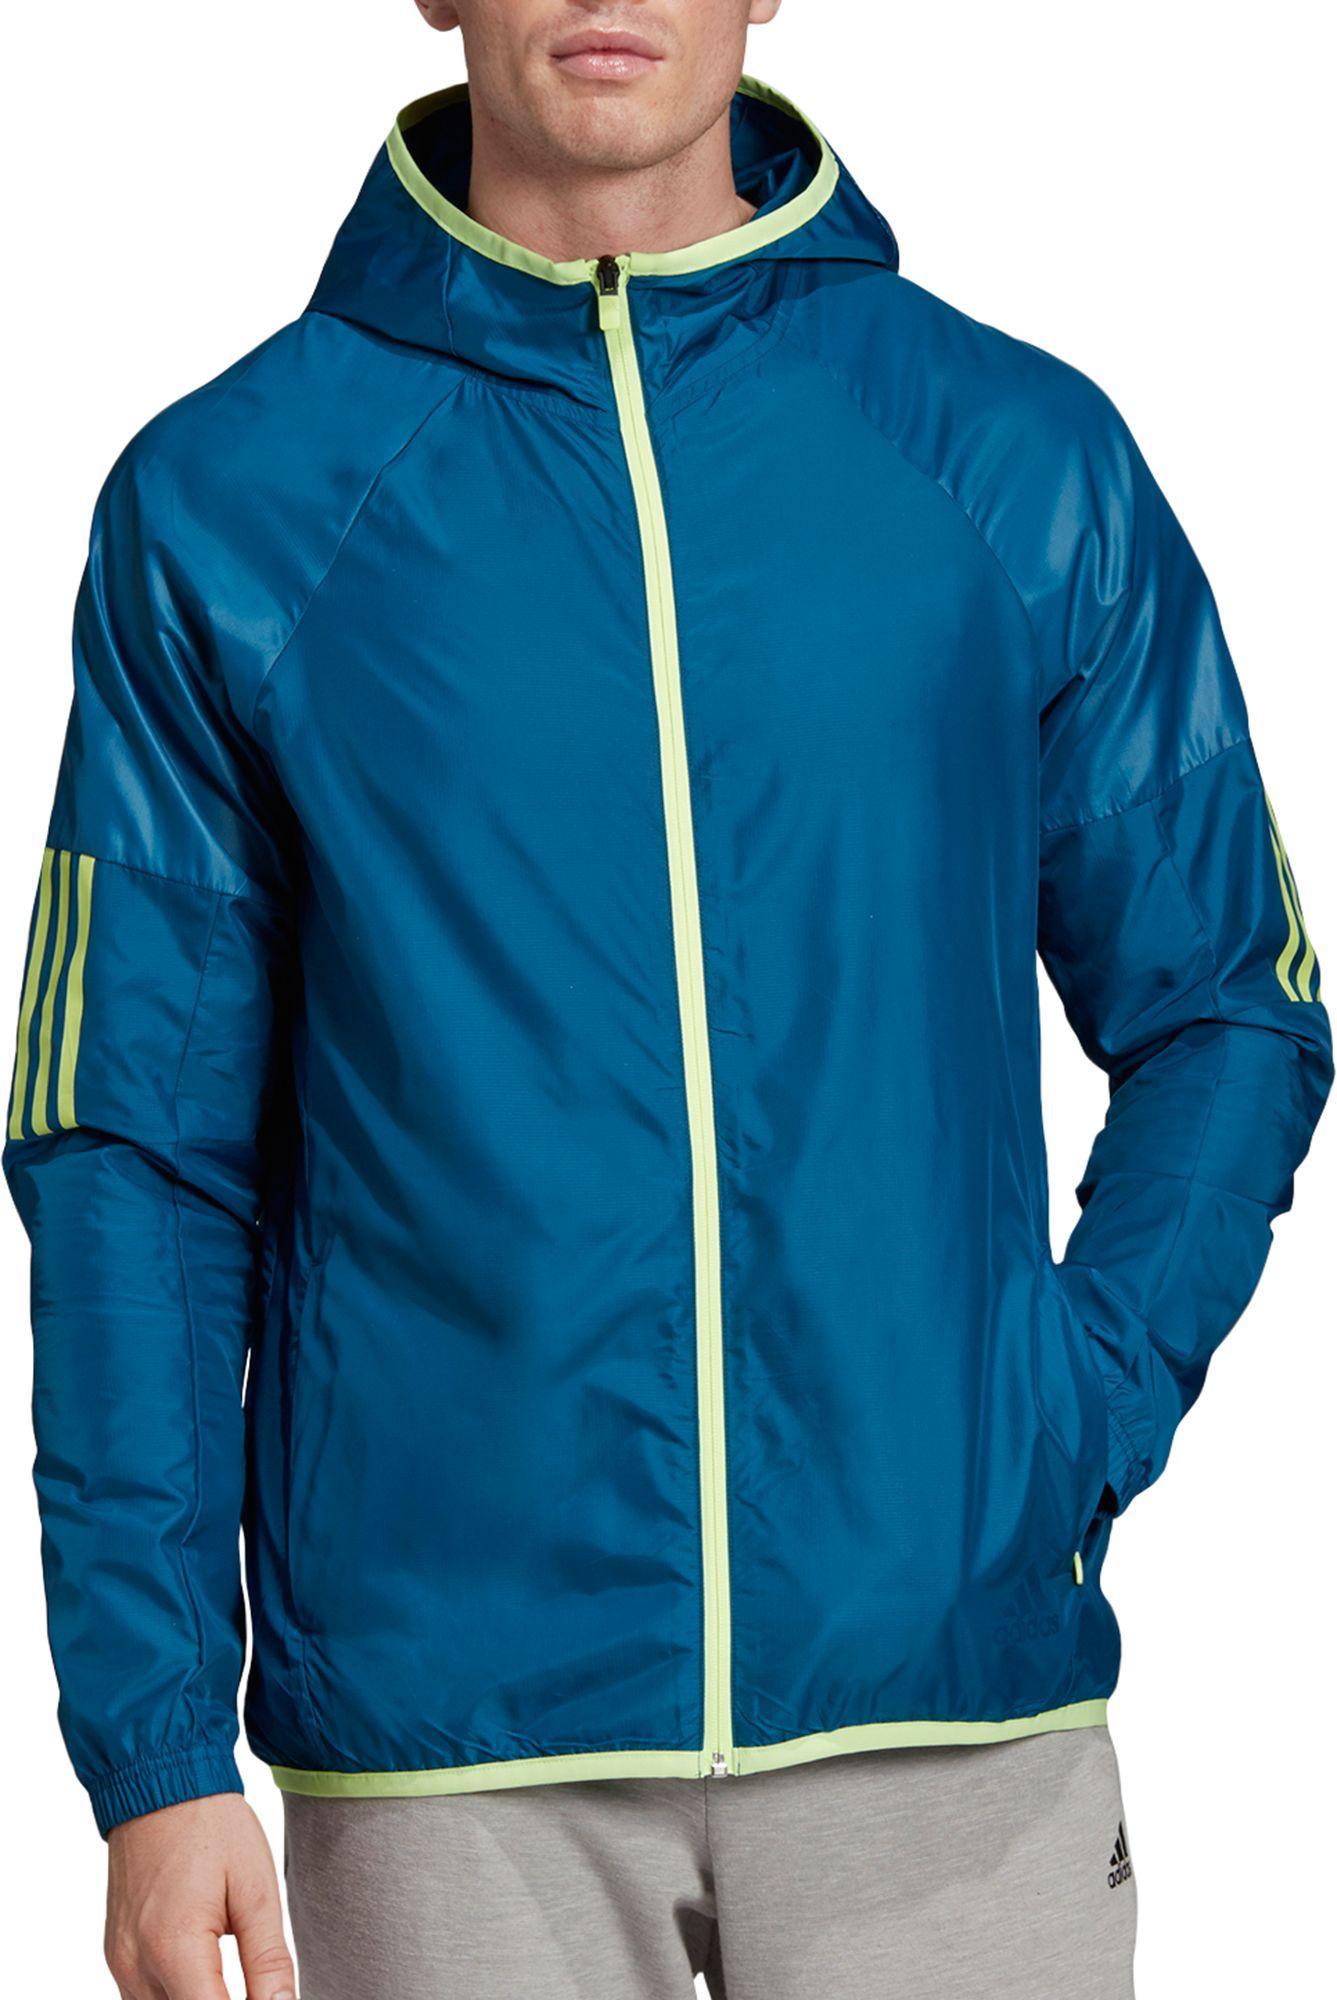 adidas Synthetic Sport 2 Street Windbreaker Jacket in Blue for Men - Lyst